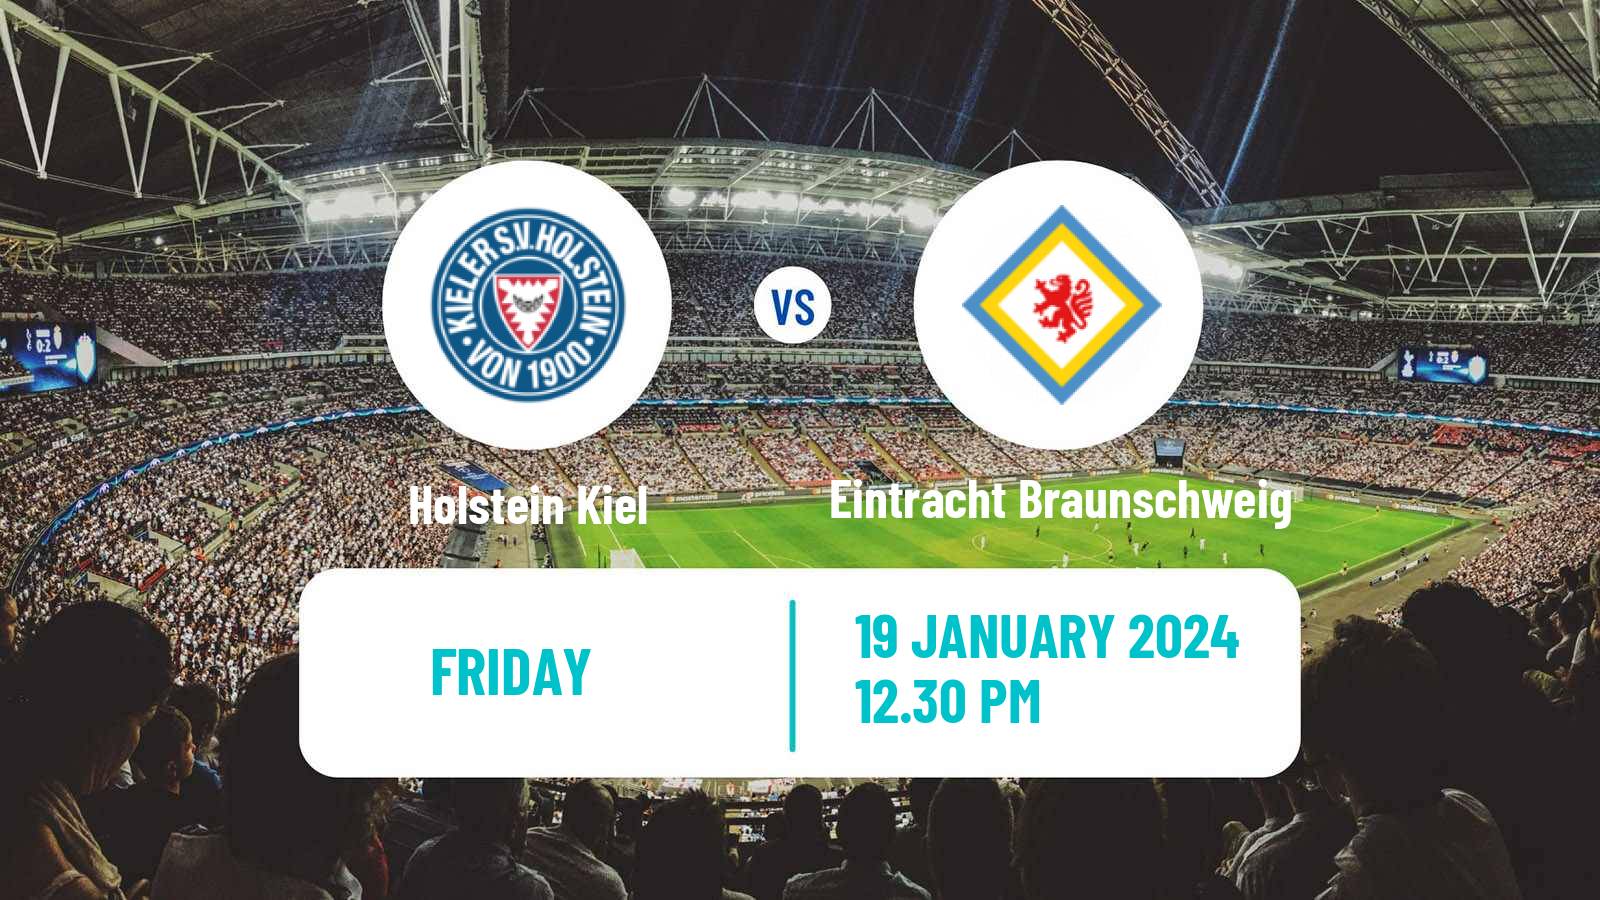 Soccer German 2 Bundesliga Holstein Kiel - Eintracht Braunschweig